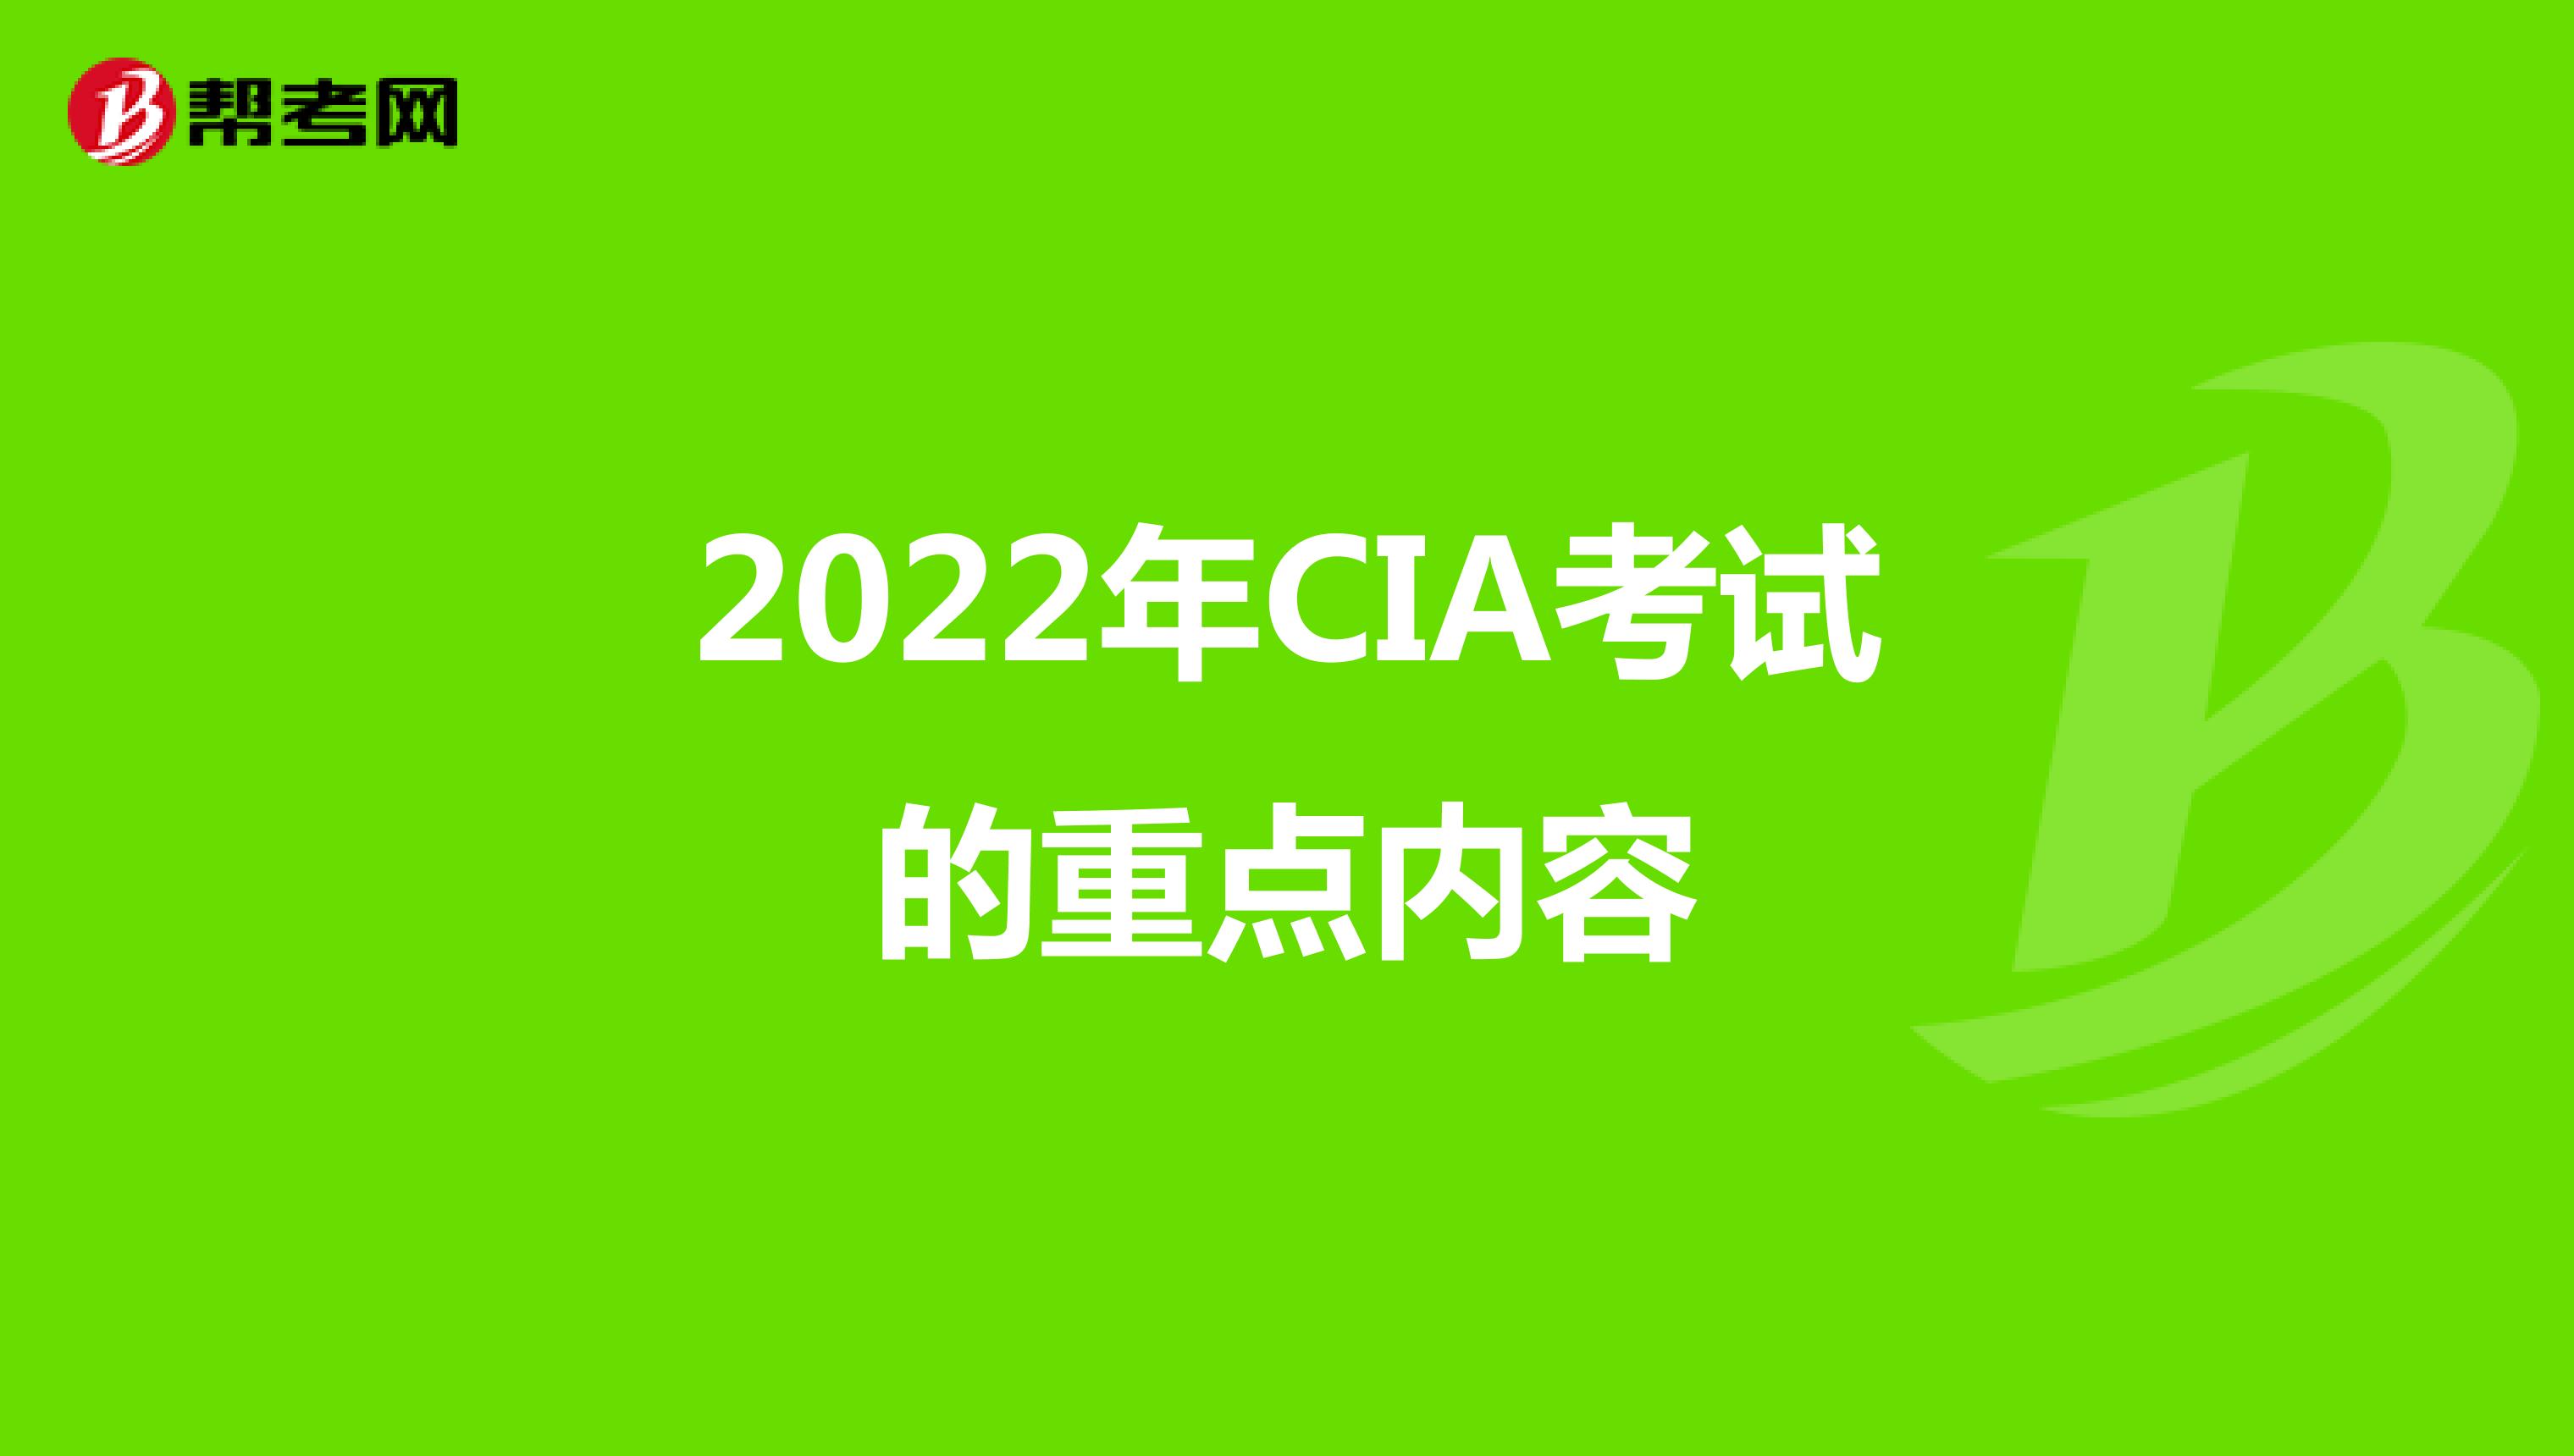 2022年CIA考试的重点内容